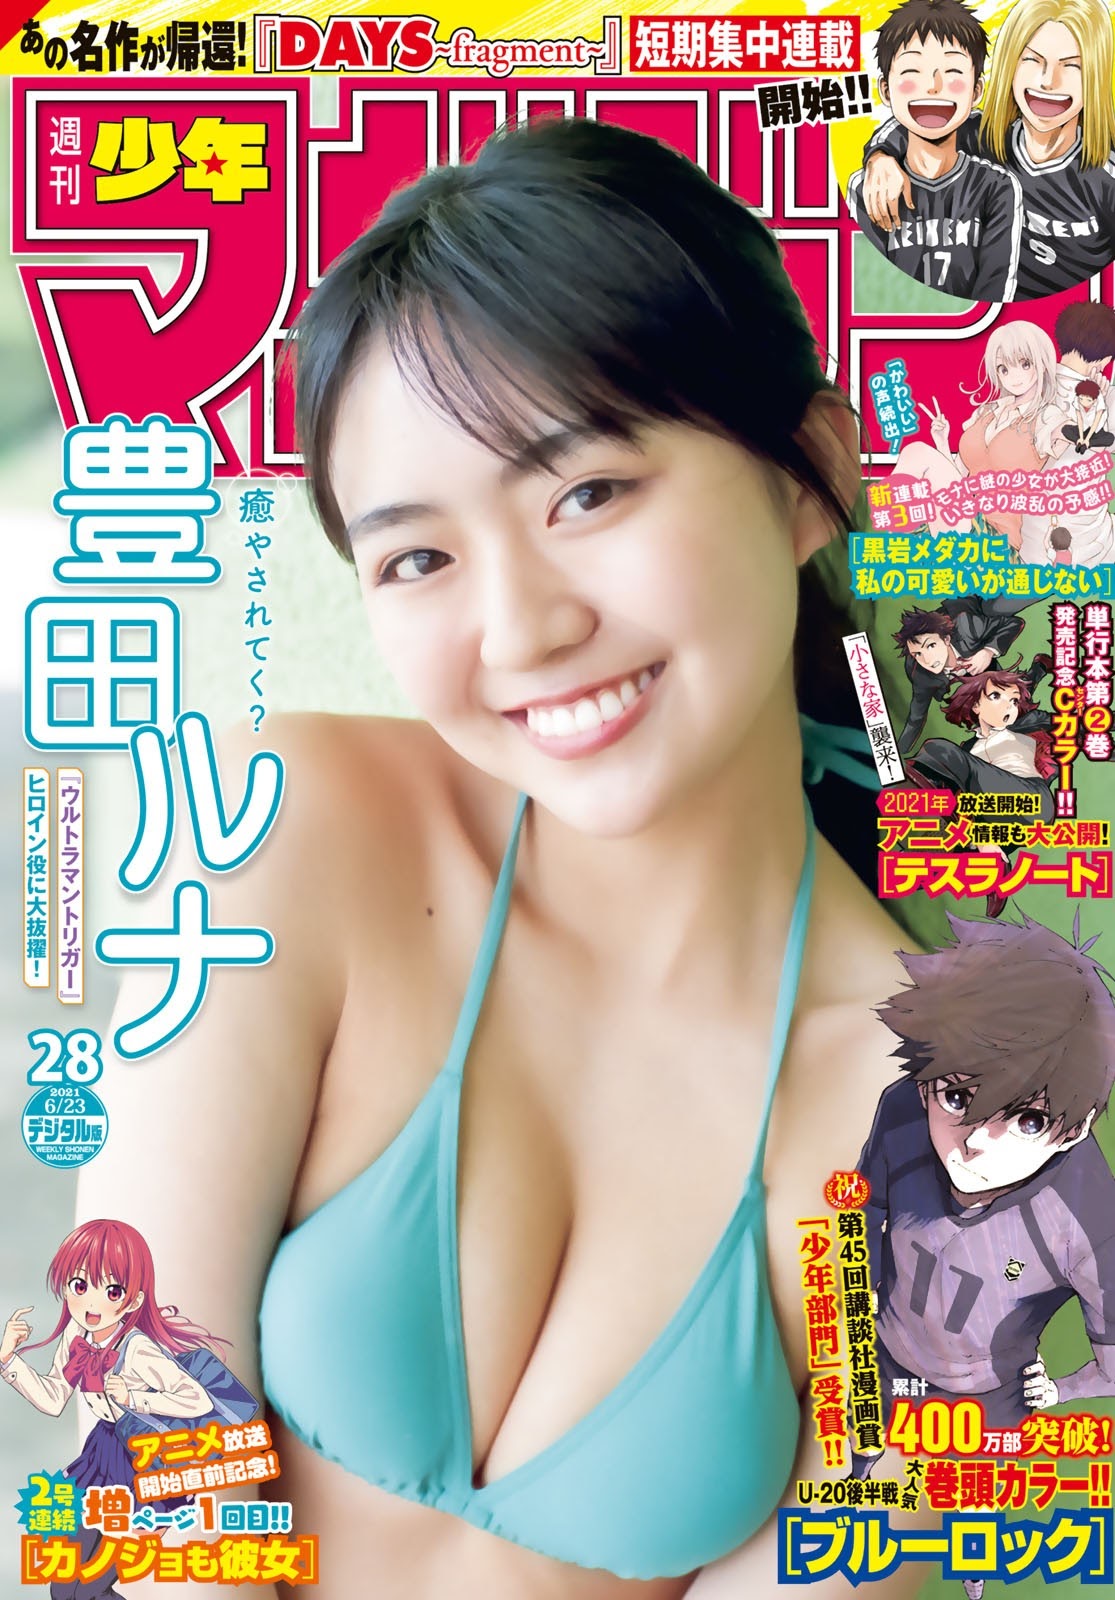 Runa Toyoda 豊田ルナ, Shonen Magazine 2021 No.28 (週刊少年マガジン 2021年28号)